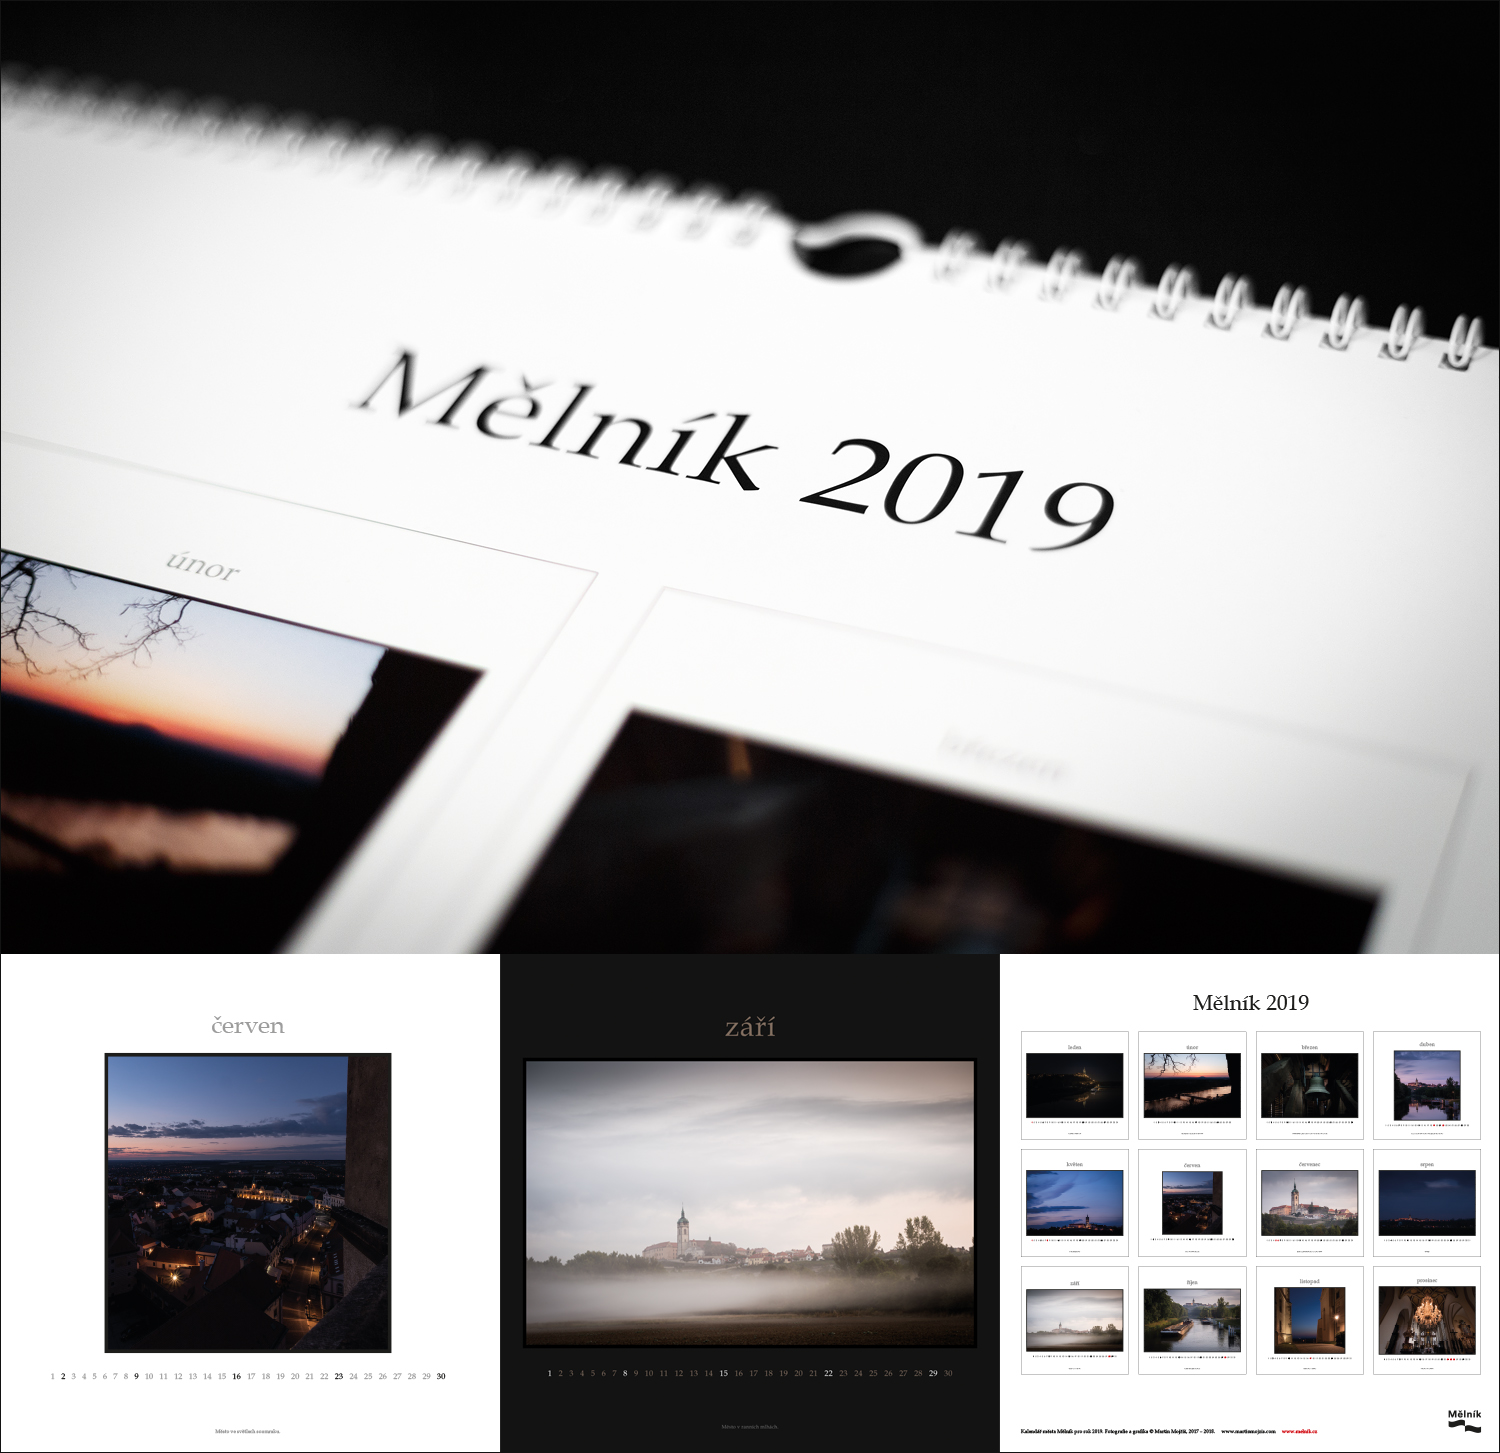 Autorský kalendář města Mělník pro rok 2019. Fotografie a grafika © Martin Mojžíš.